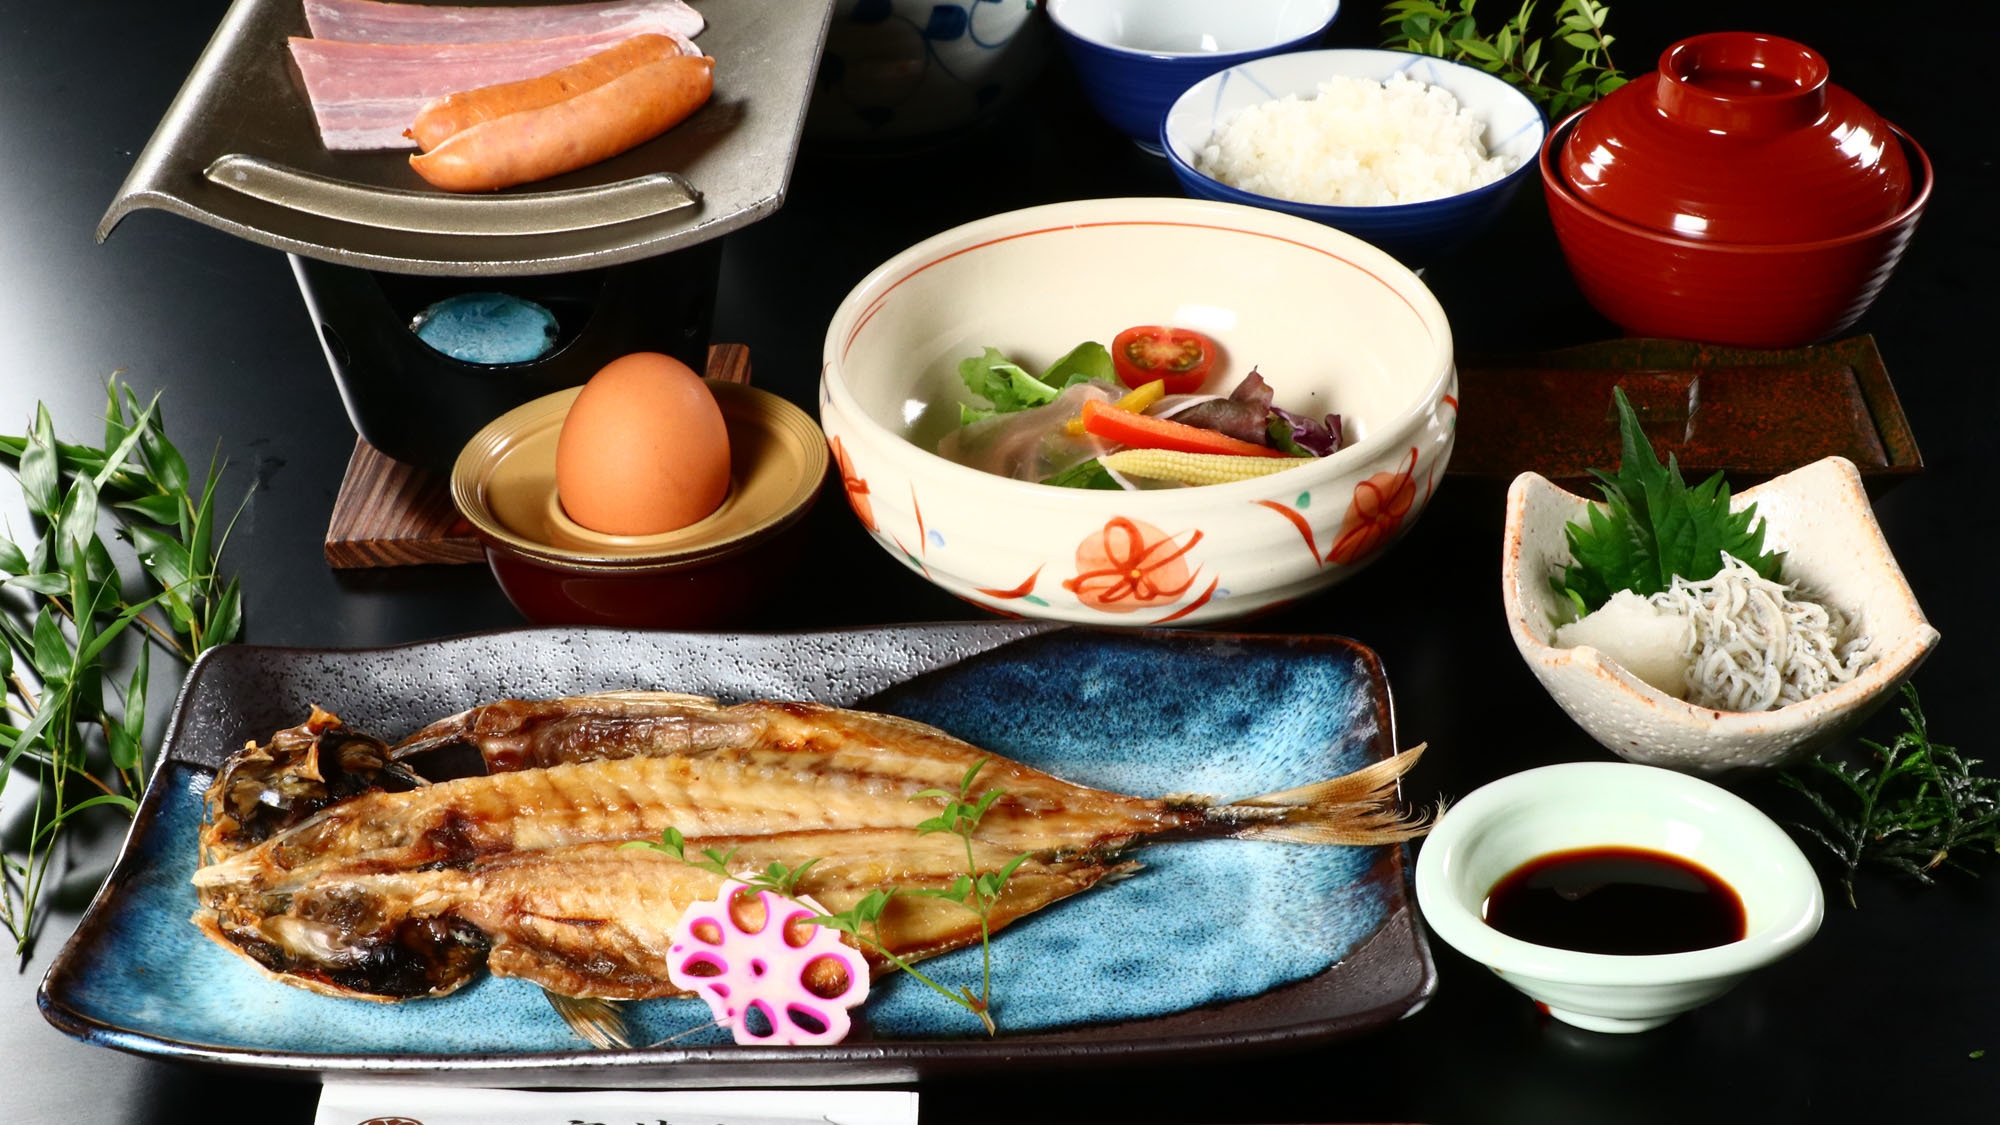 【リーズナブル】朝夕食付き★お手軽に宇津江荘のお料理をお楽しみ頂けるプランです。